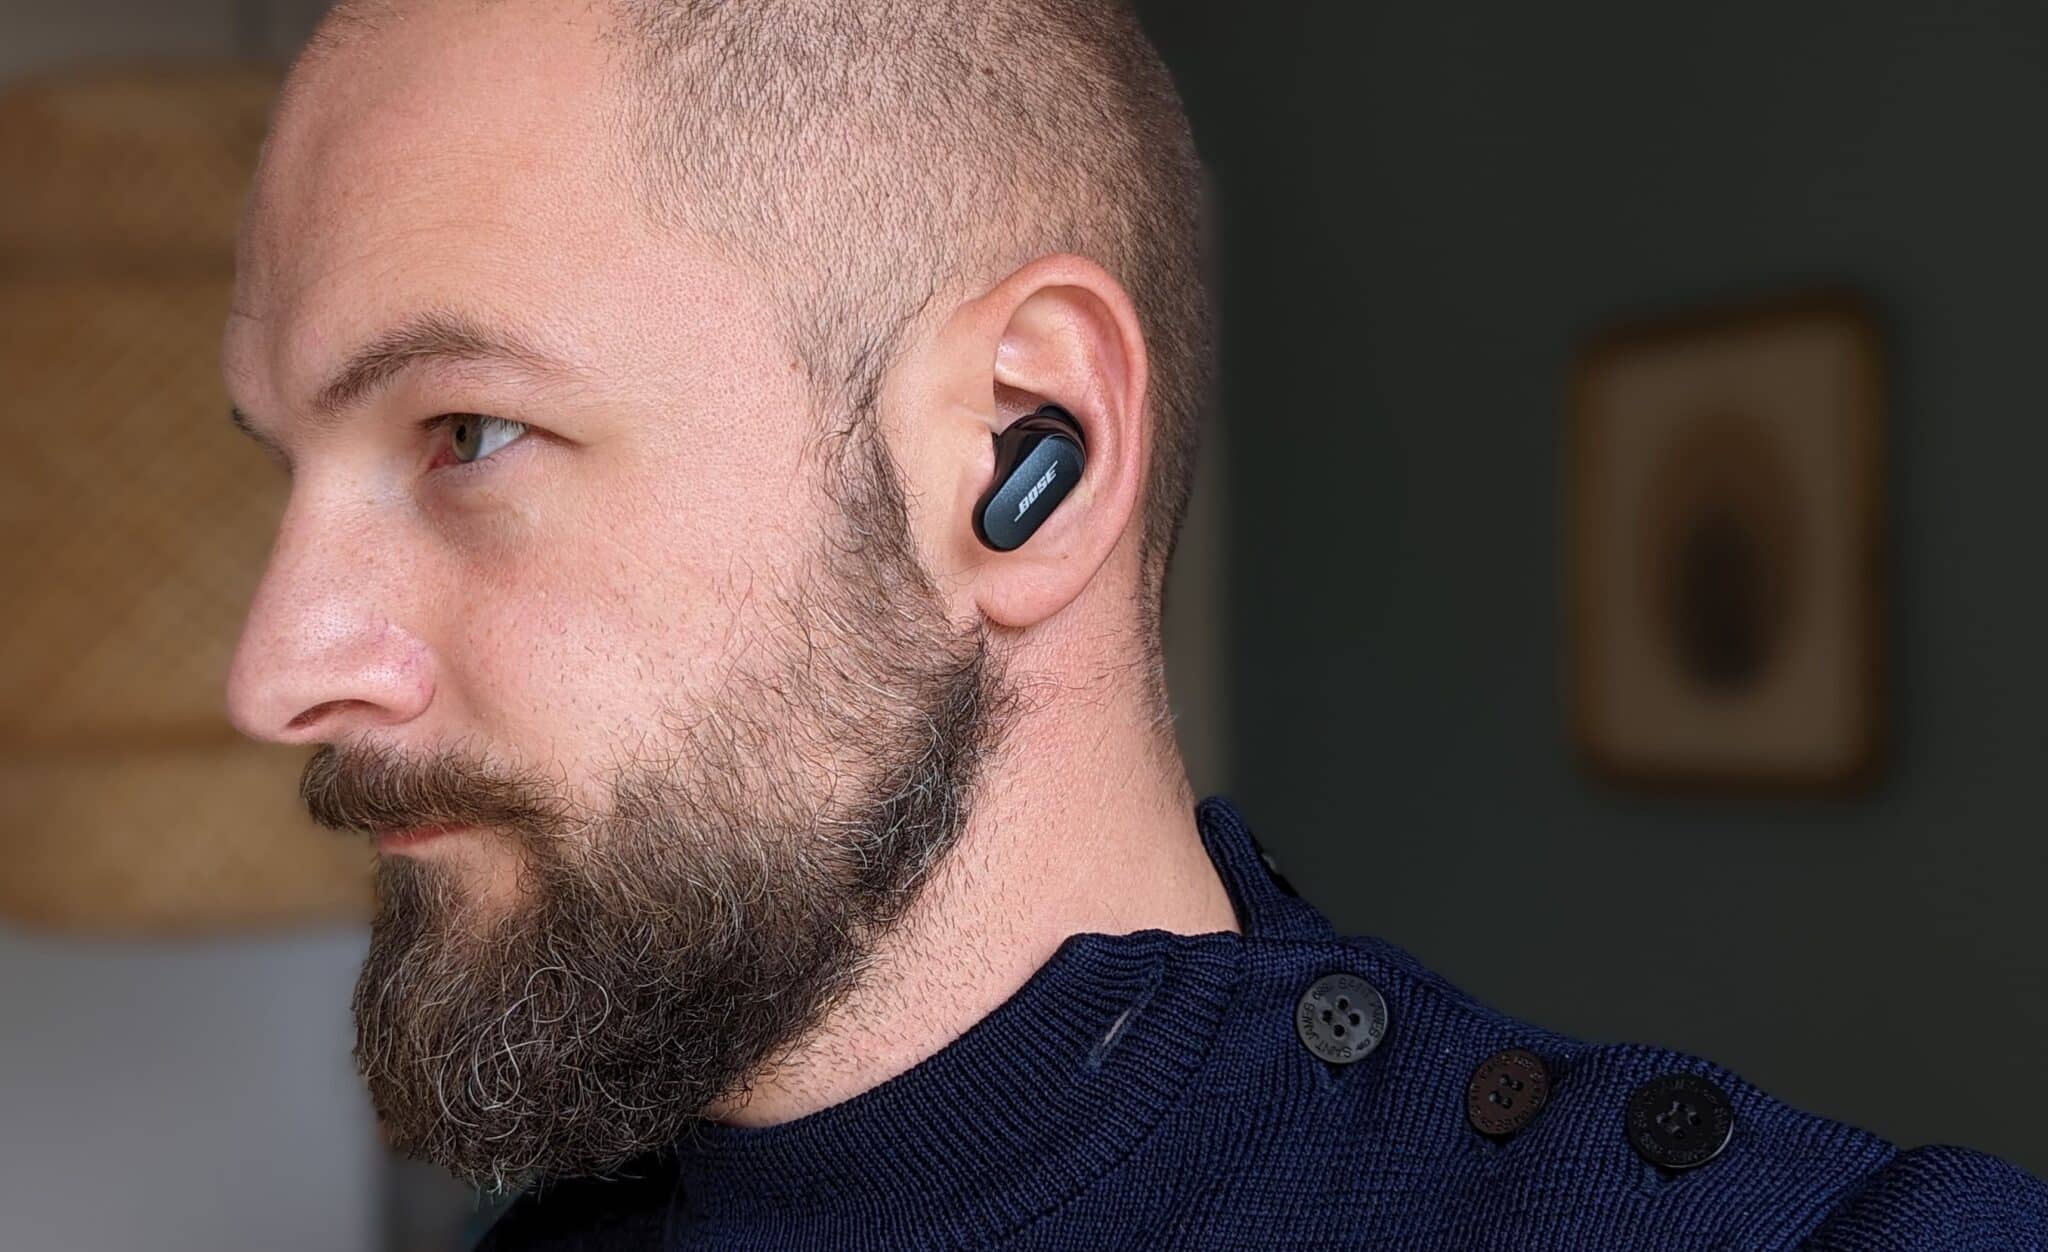 Test des Bose QuietComfort Earbuds II : des écouteurs à la